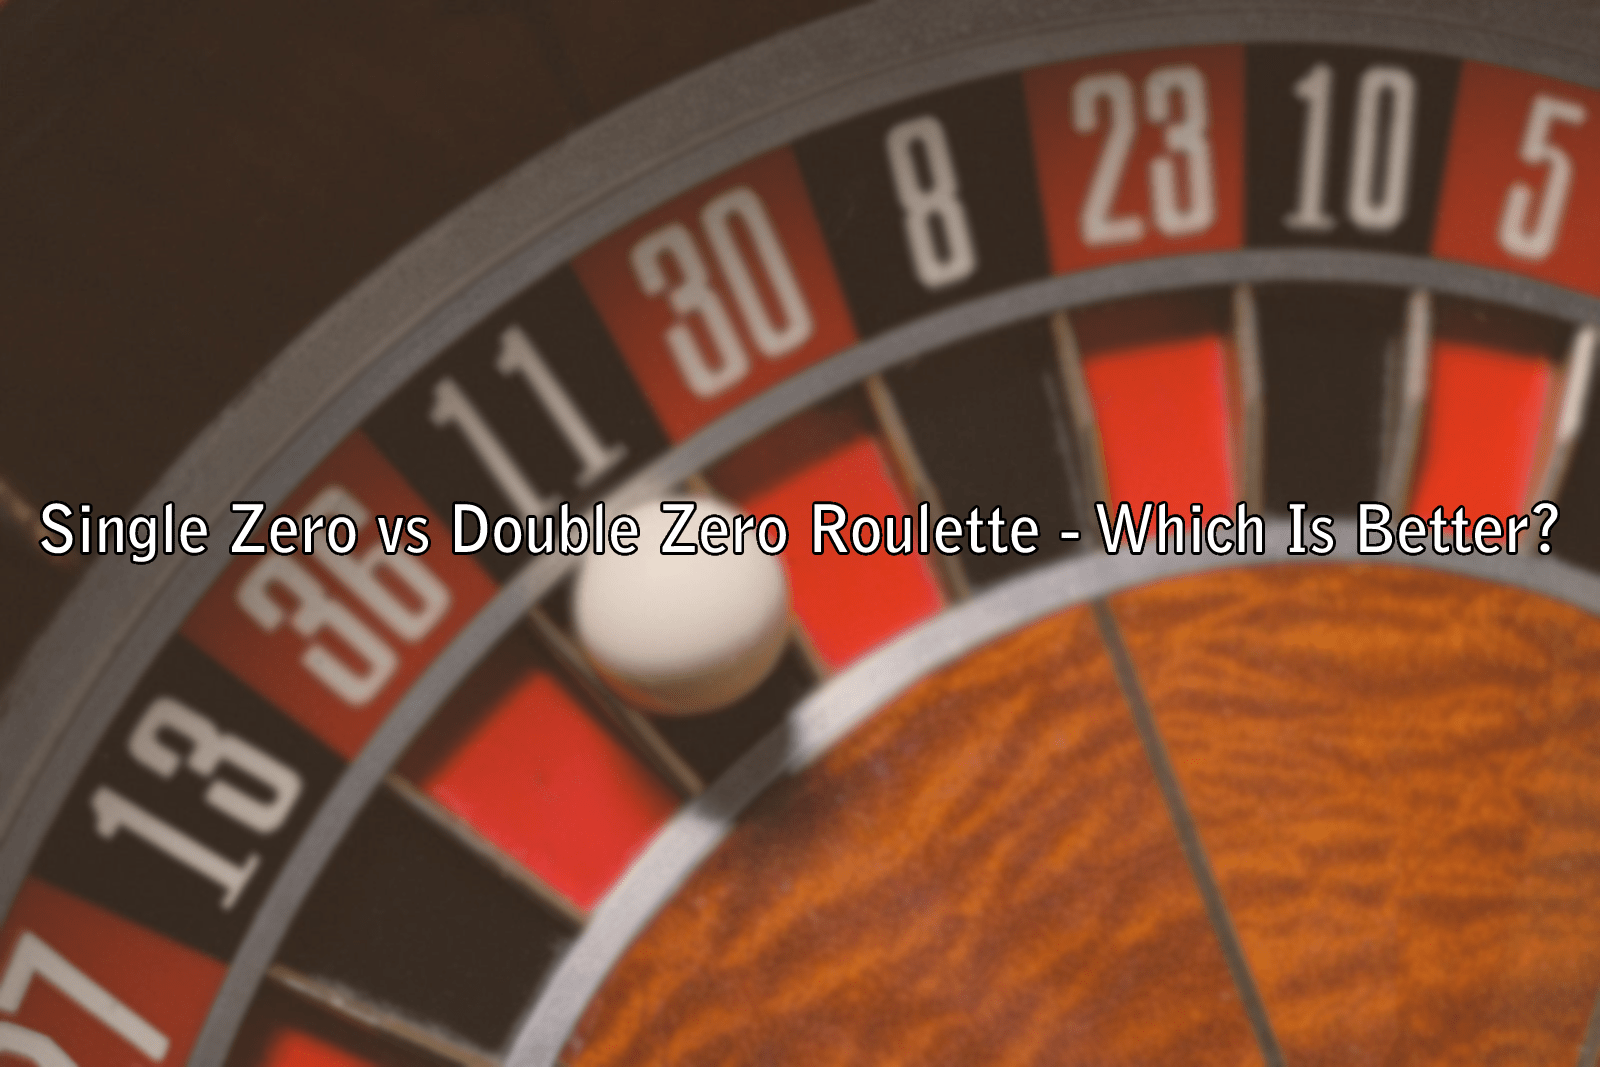 Single Zero vs Double Zero Roulette - Which Is Better?